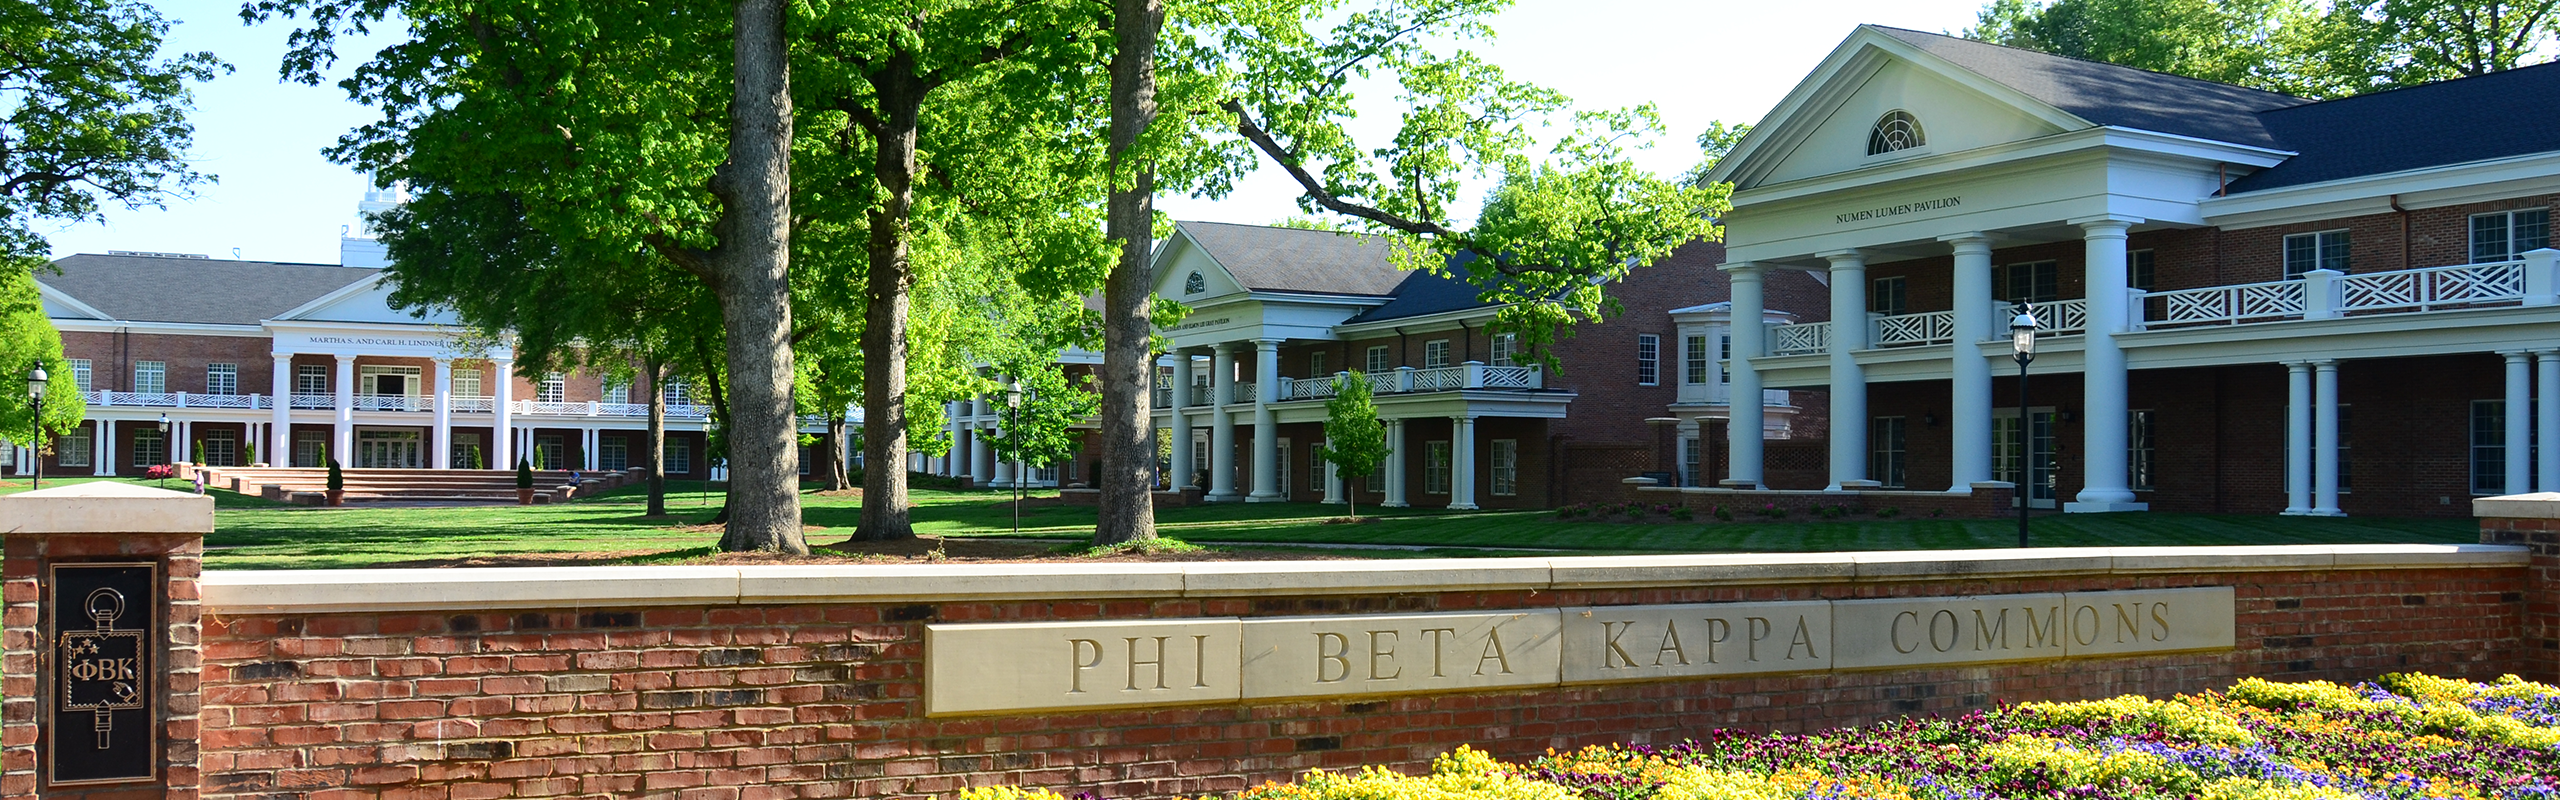 Image of Phi Beta Kappa Commons